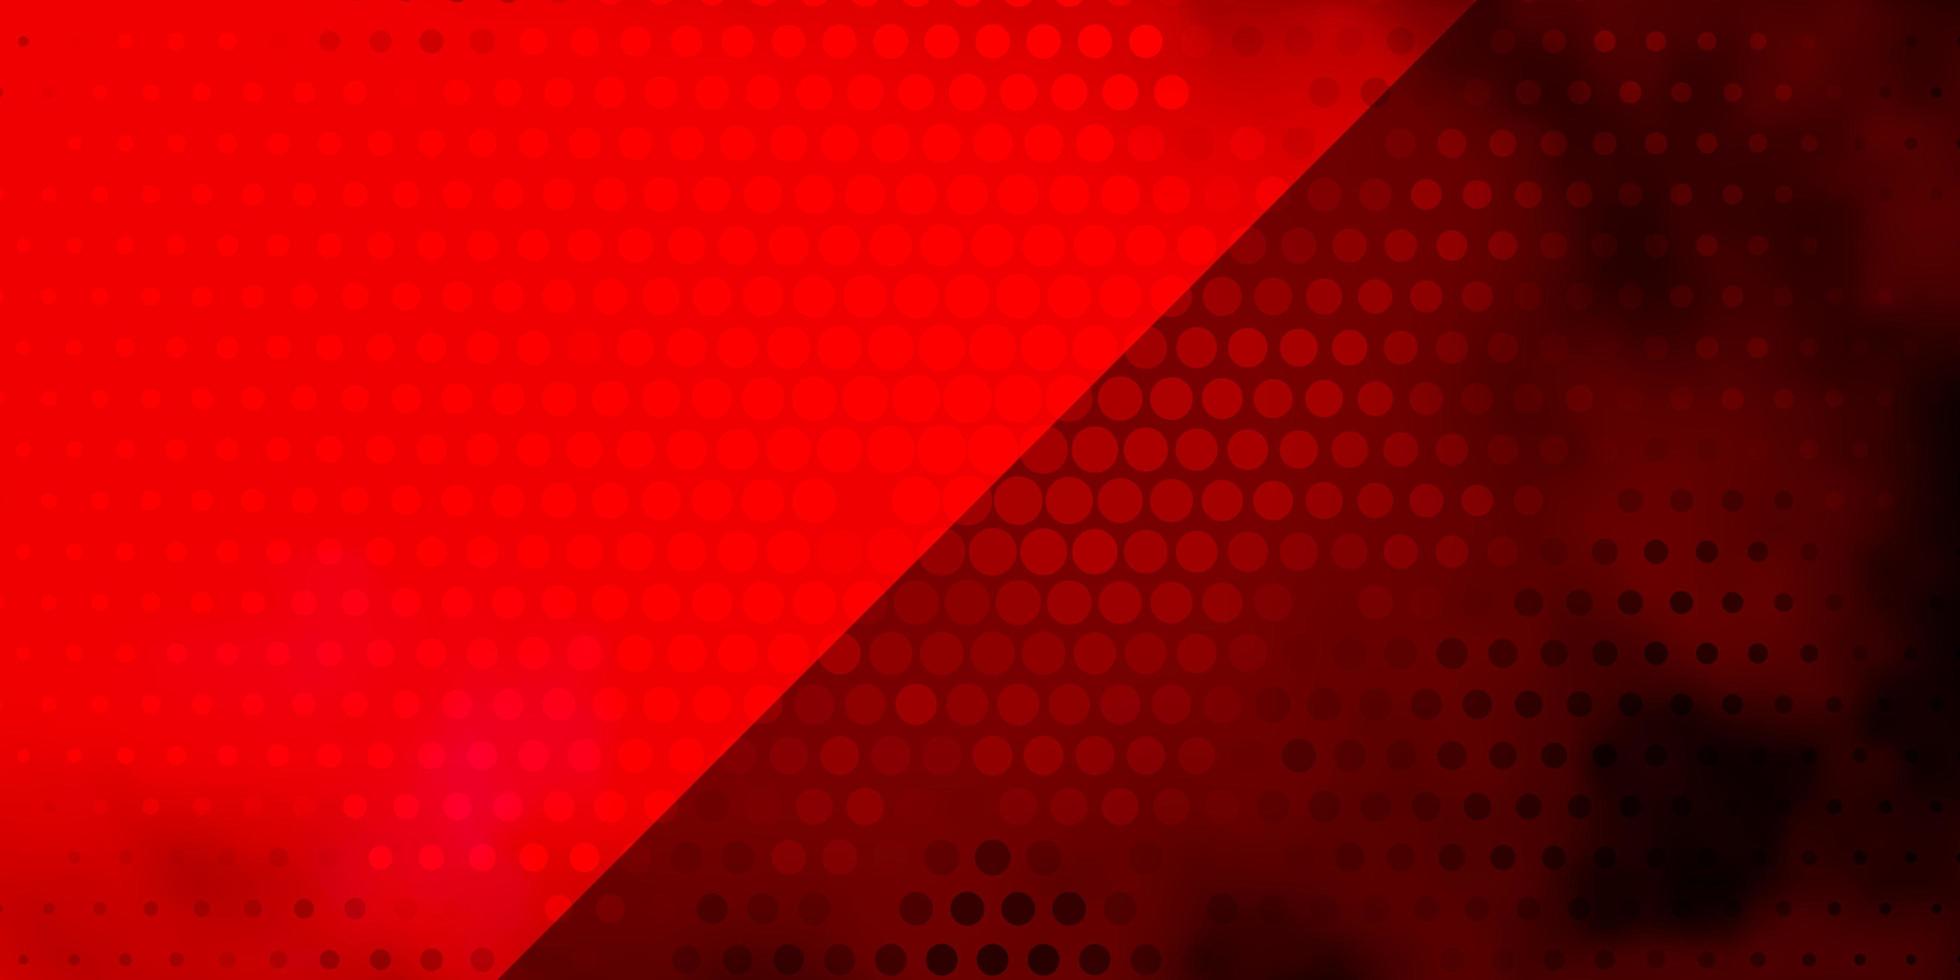 ljusrosa, röd vektorbakgrund med cirklar. vektor